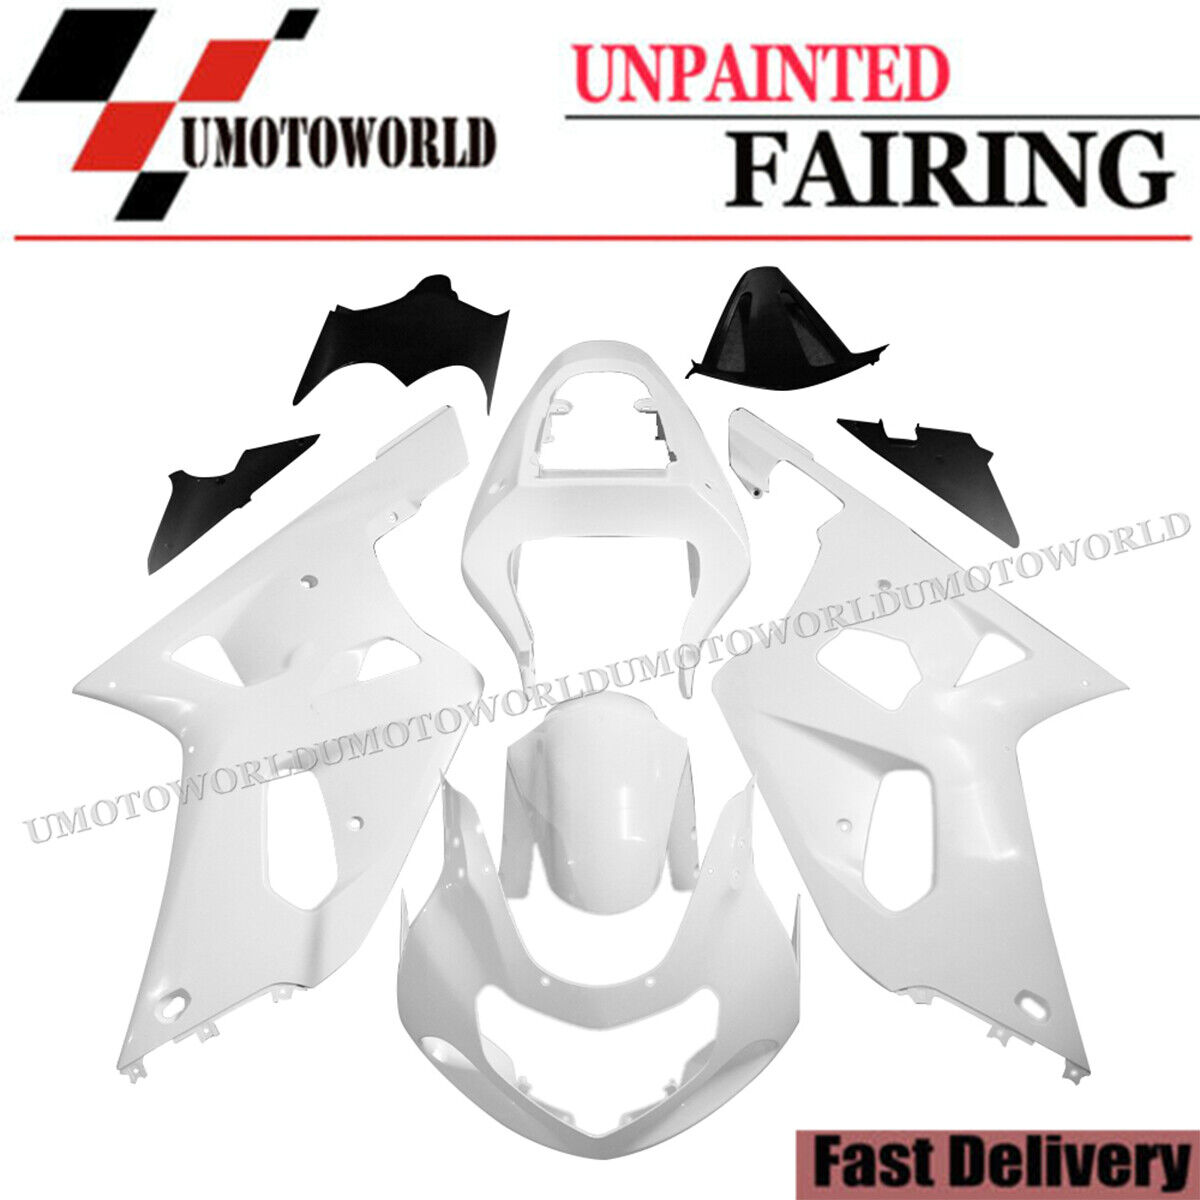 Unpainted Fairing Kit for Suzuki GSXR600/750 2001-2003 01 ABS injection Bodywork